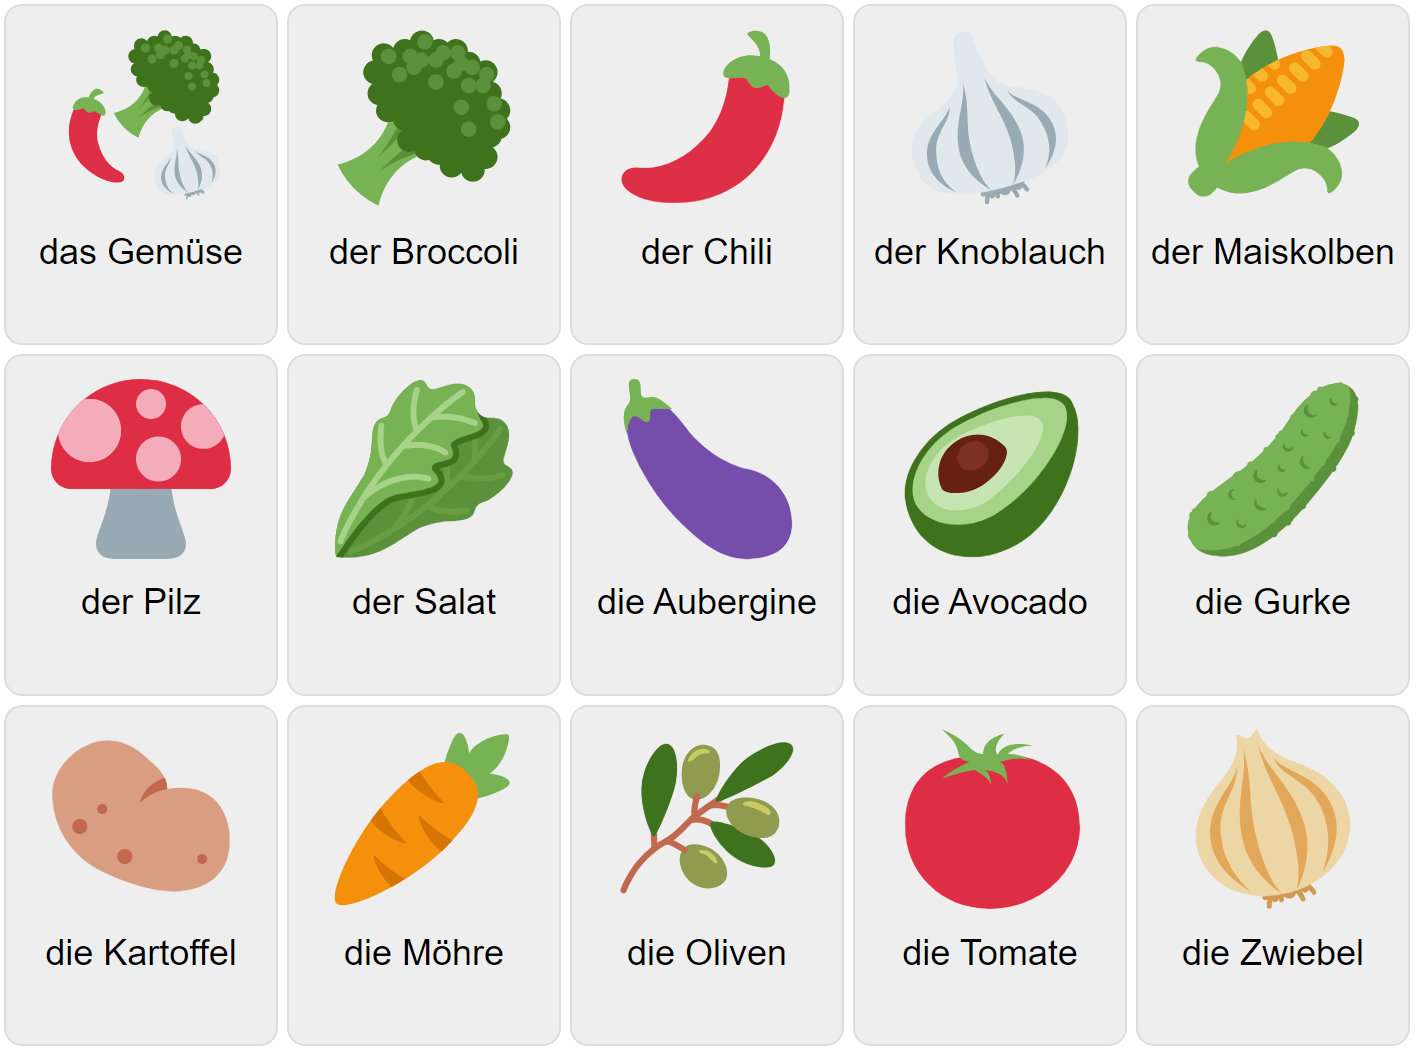 Vegetables in German